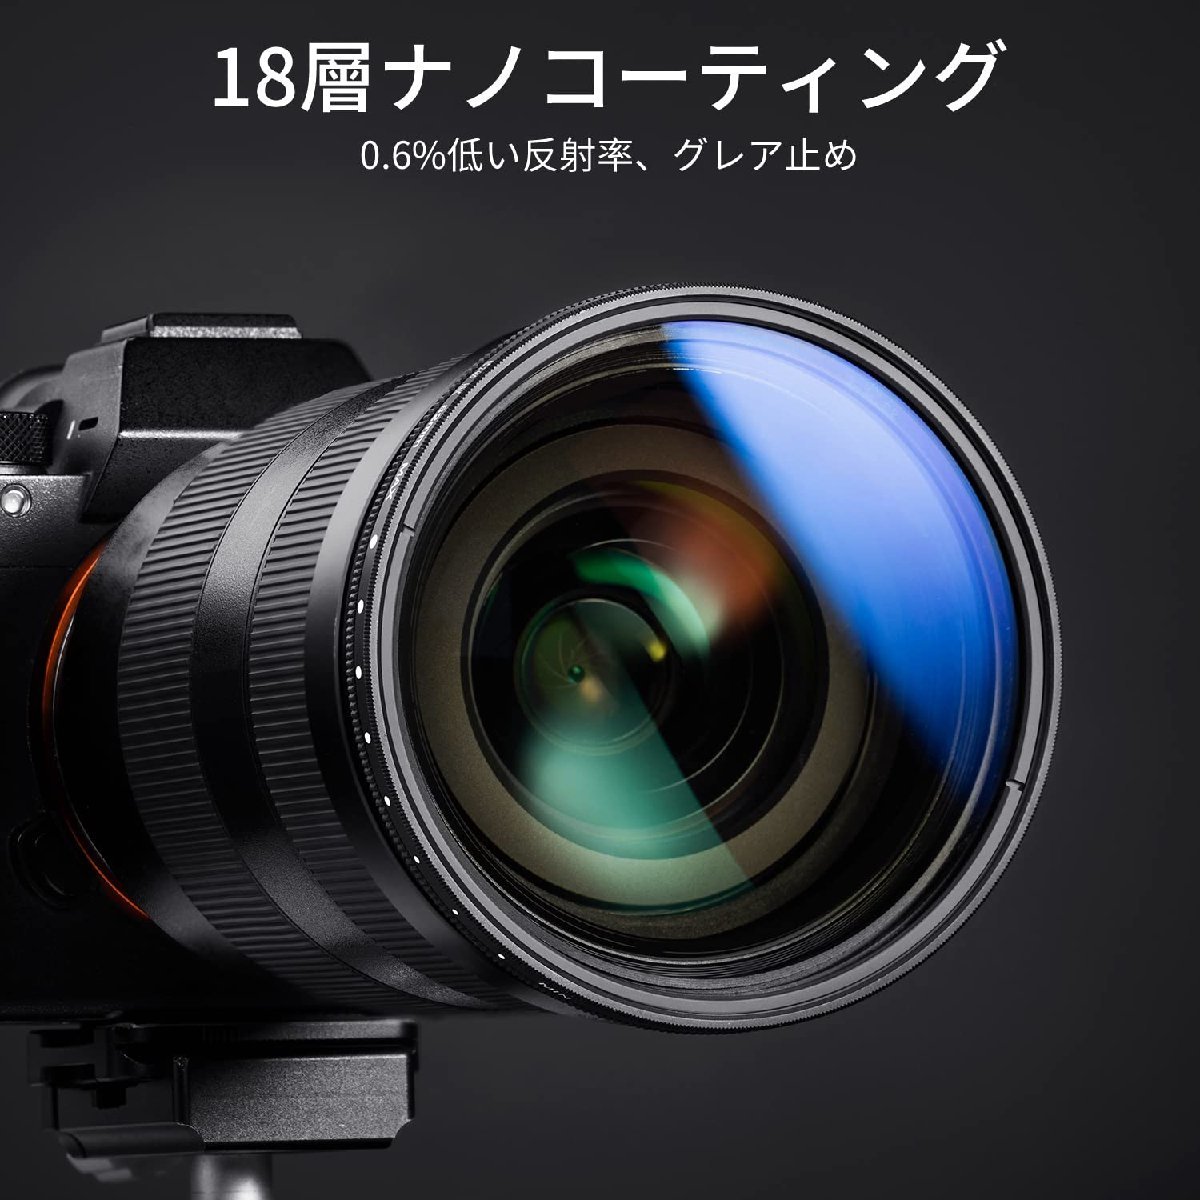 送料無料★K&F Concept 72mm 可変NDフィルター ND2-ND400専用フィルターキャップ付属 18層コーティング_画像2